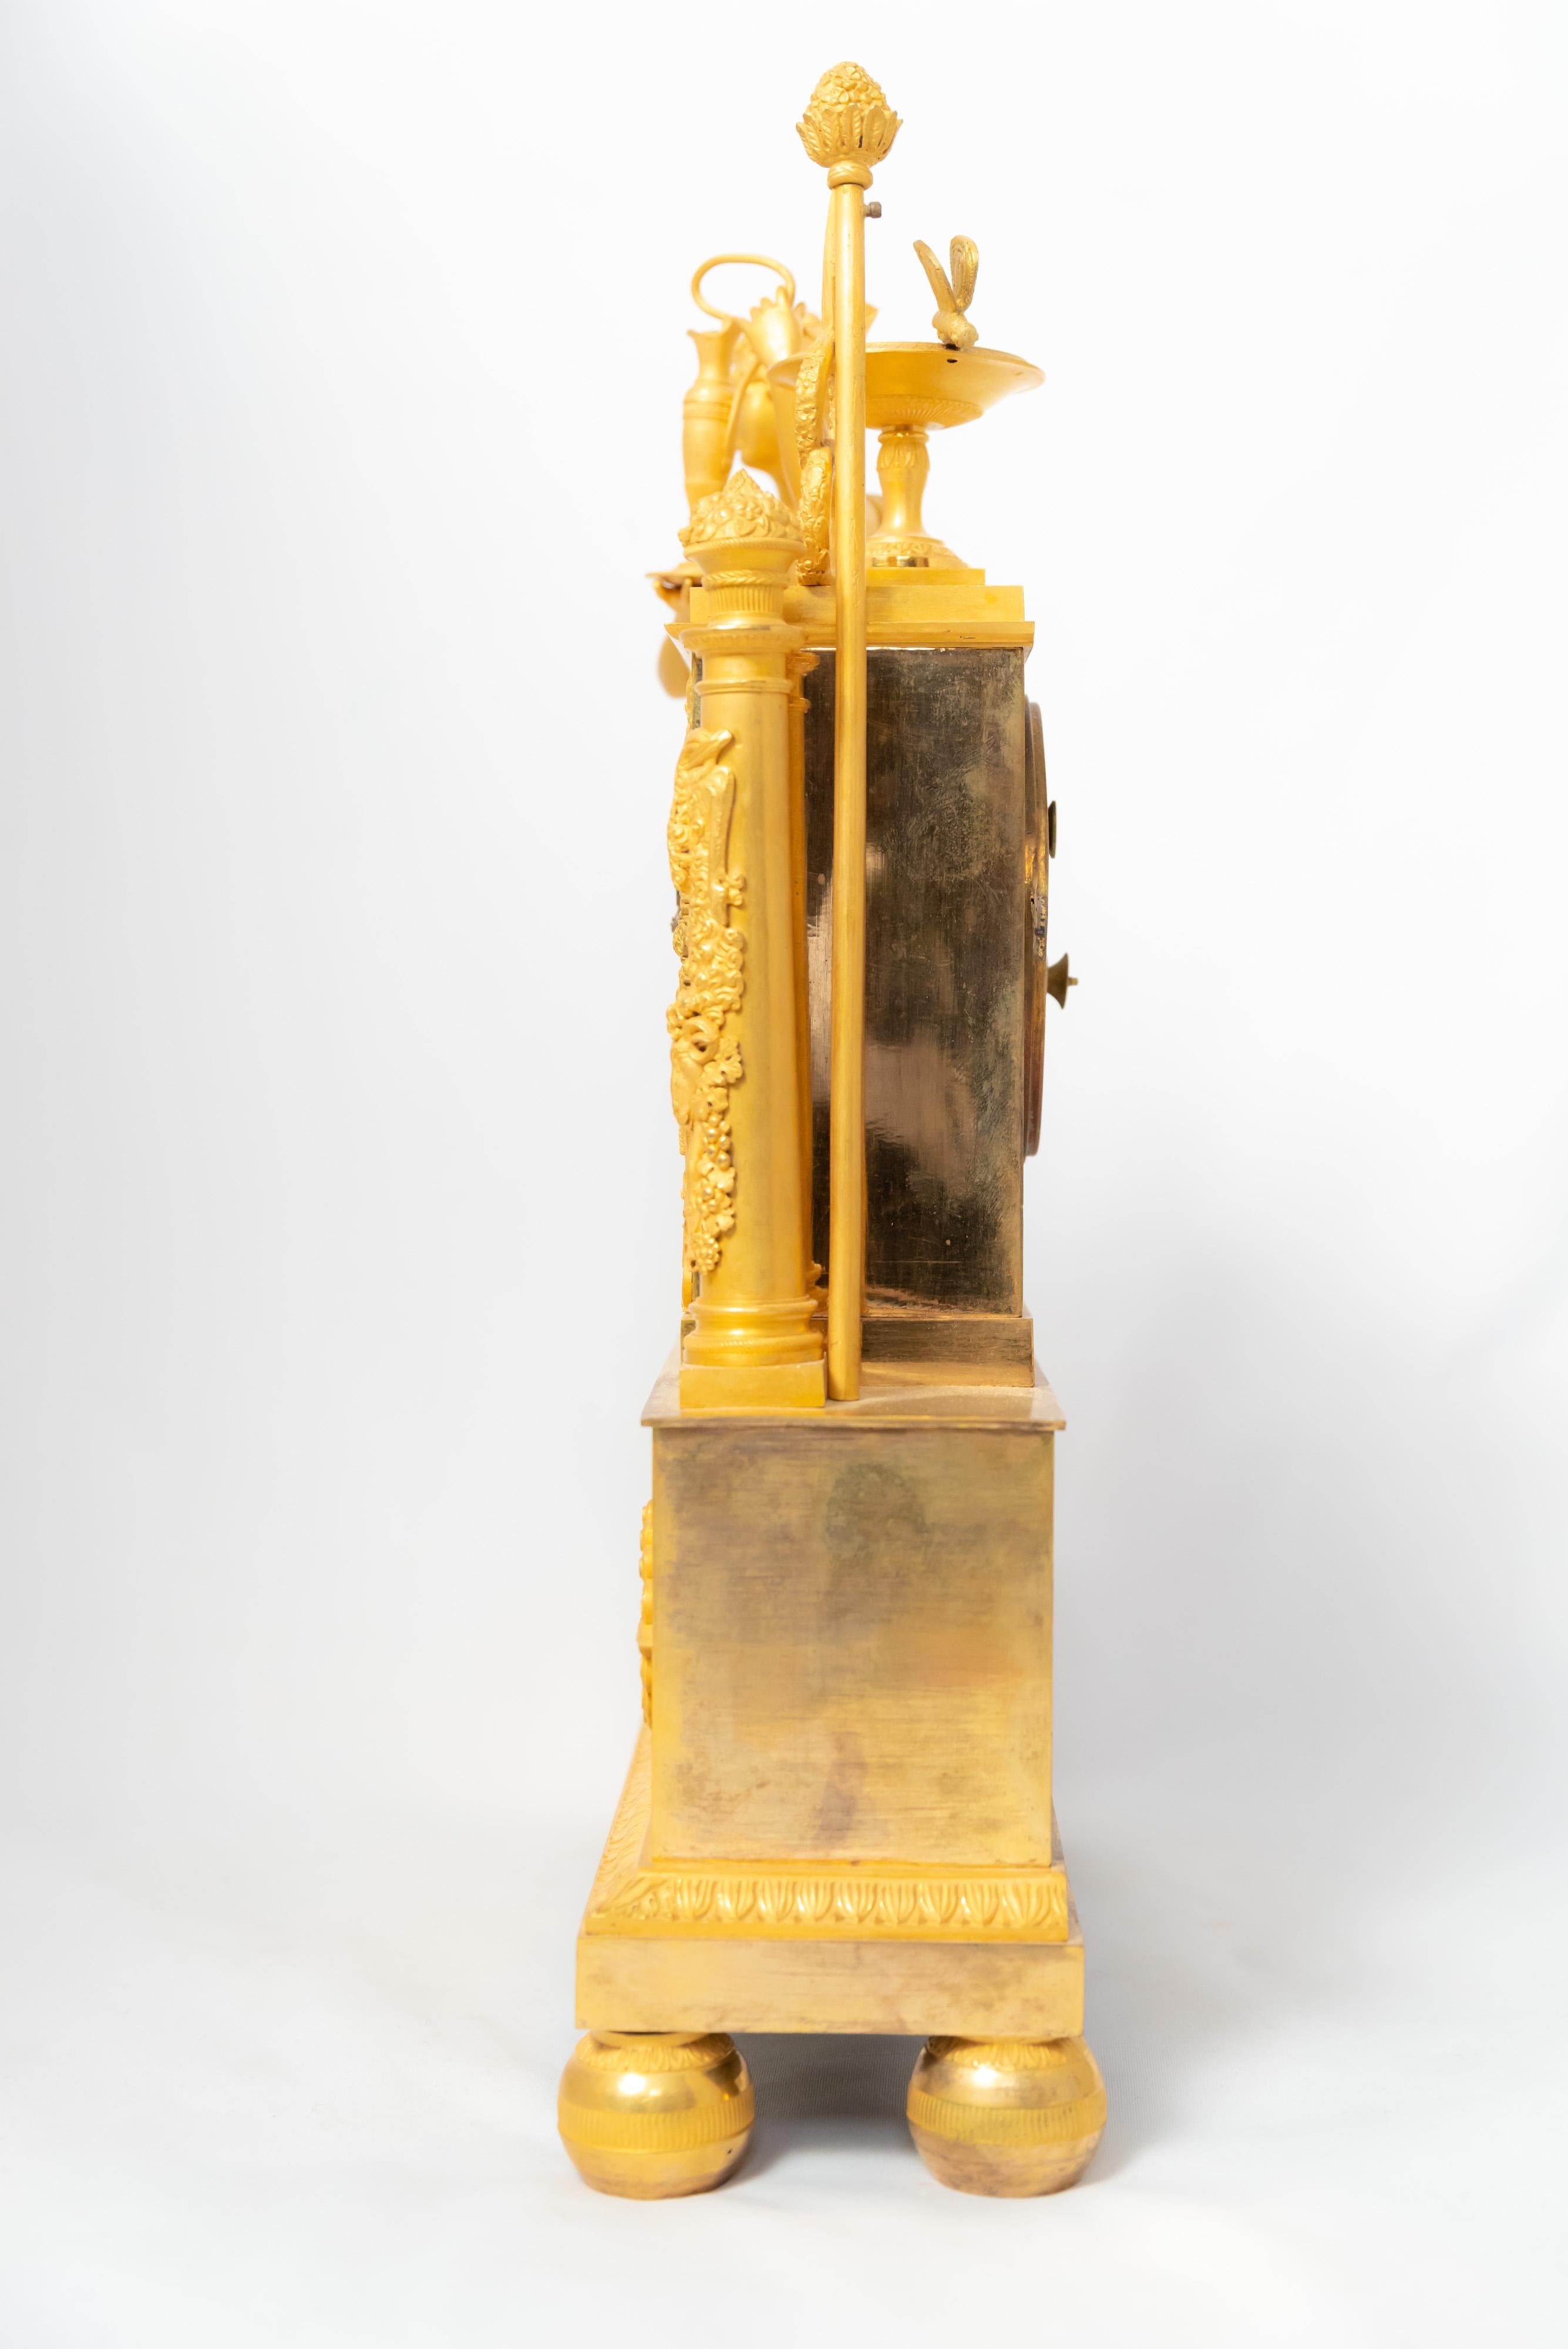 Pendule de cheminée de l'époque de la Restauration française (1815-1830) en bronze doré au feu. Le cadran est émaillé de blanc et les heures sont représentées par des chiffres romains. La figure représente la déesse Héra, épouse de Zeus. Cette pièce